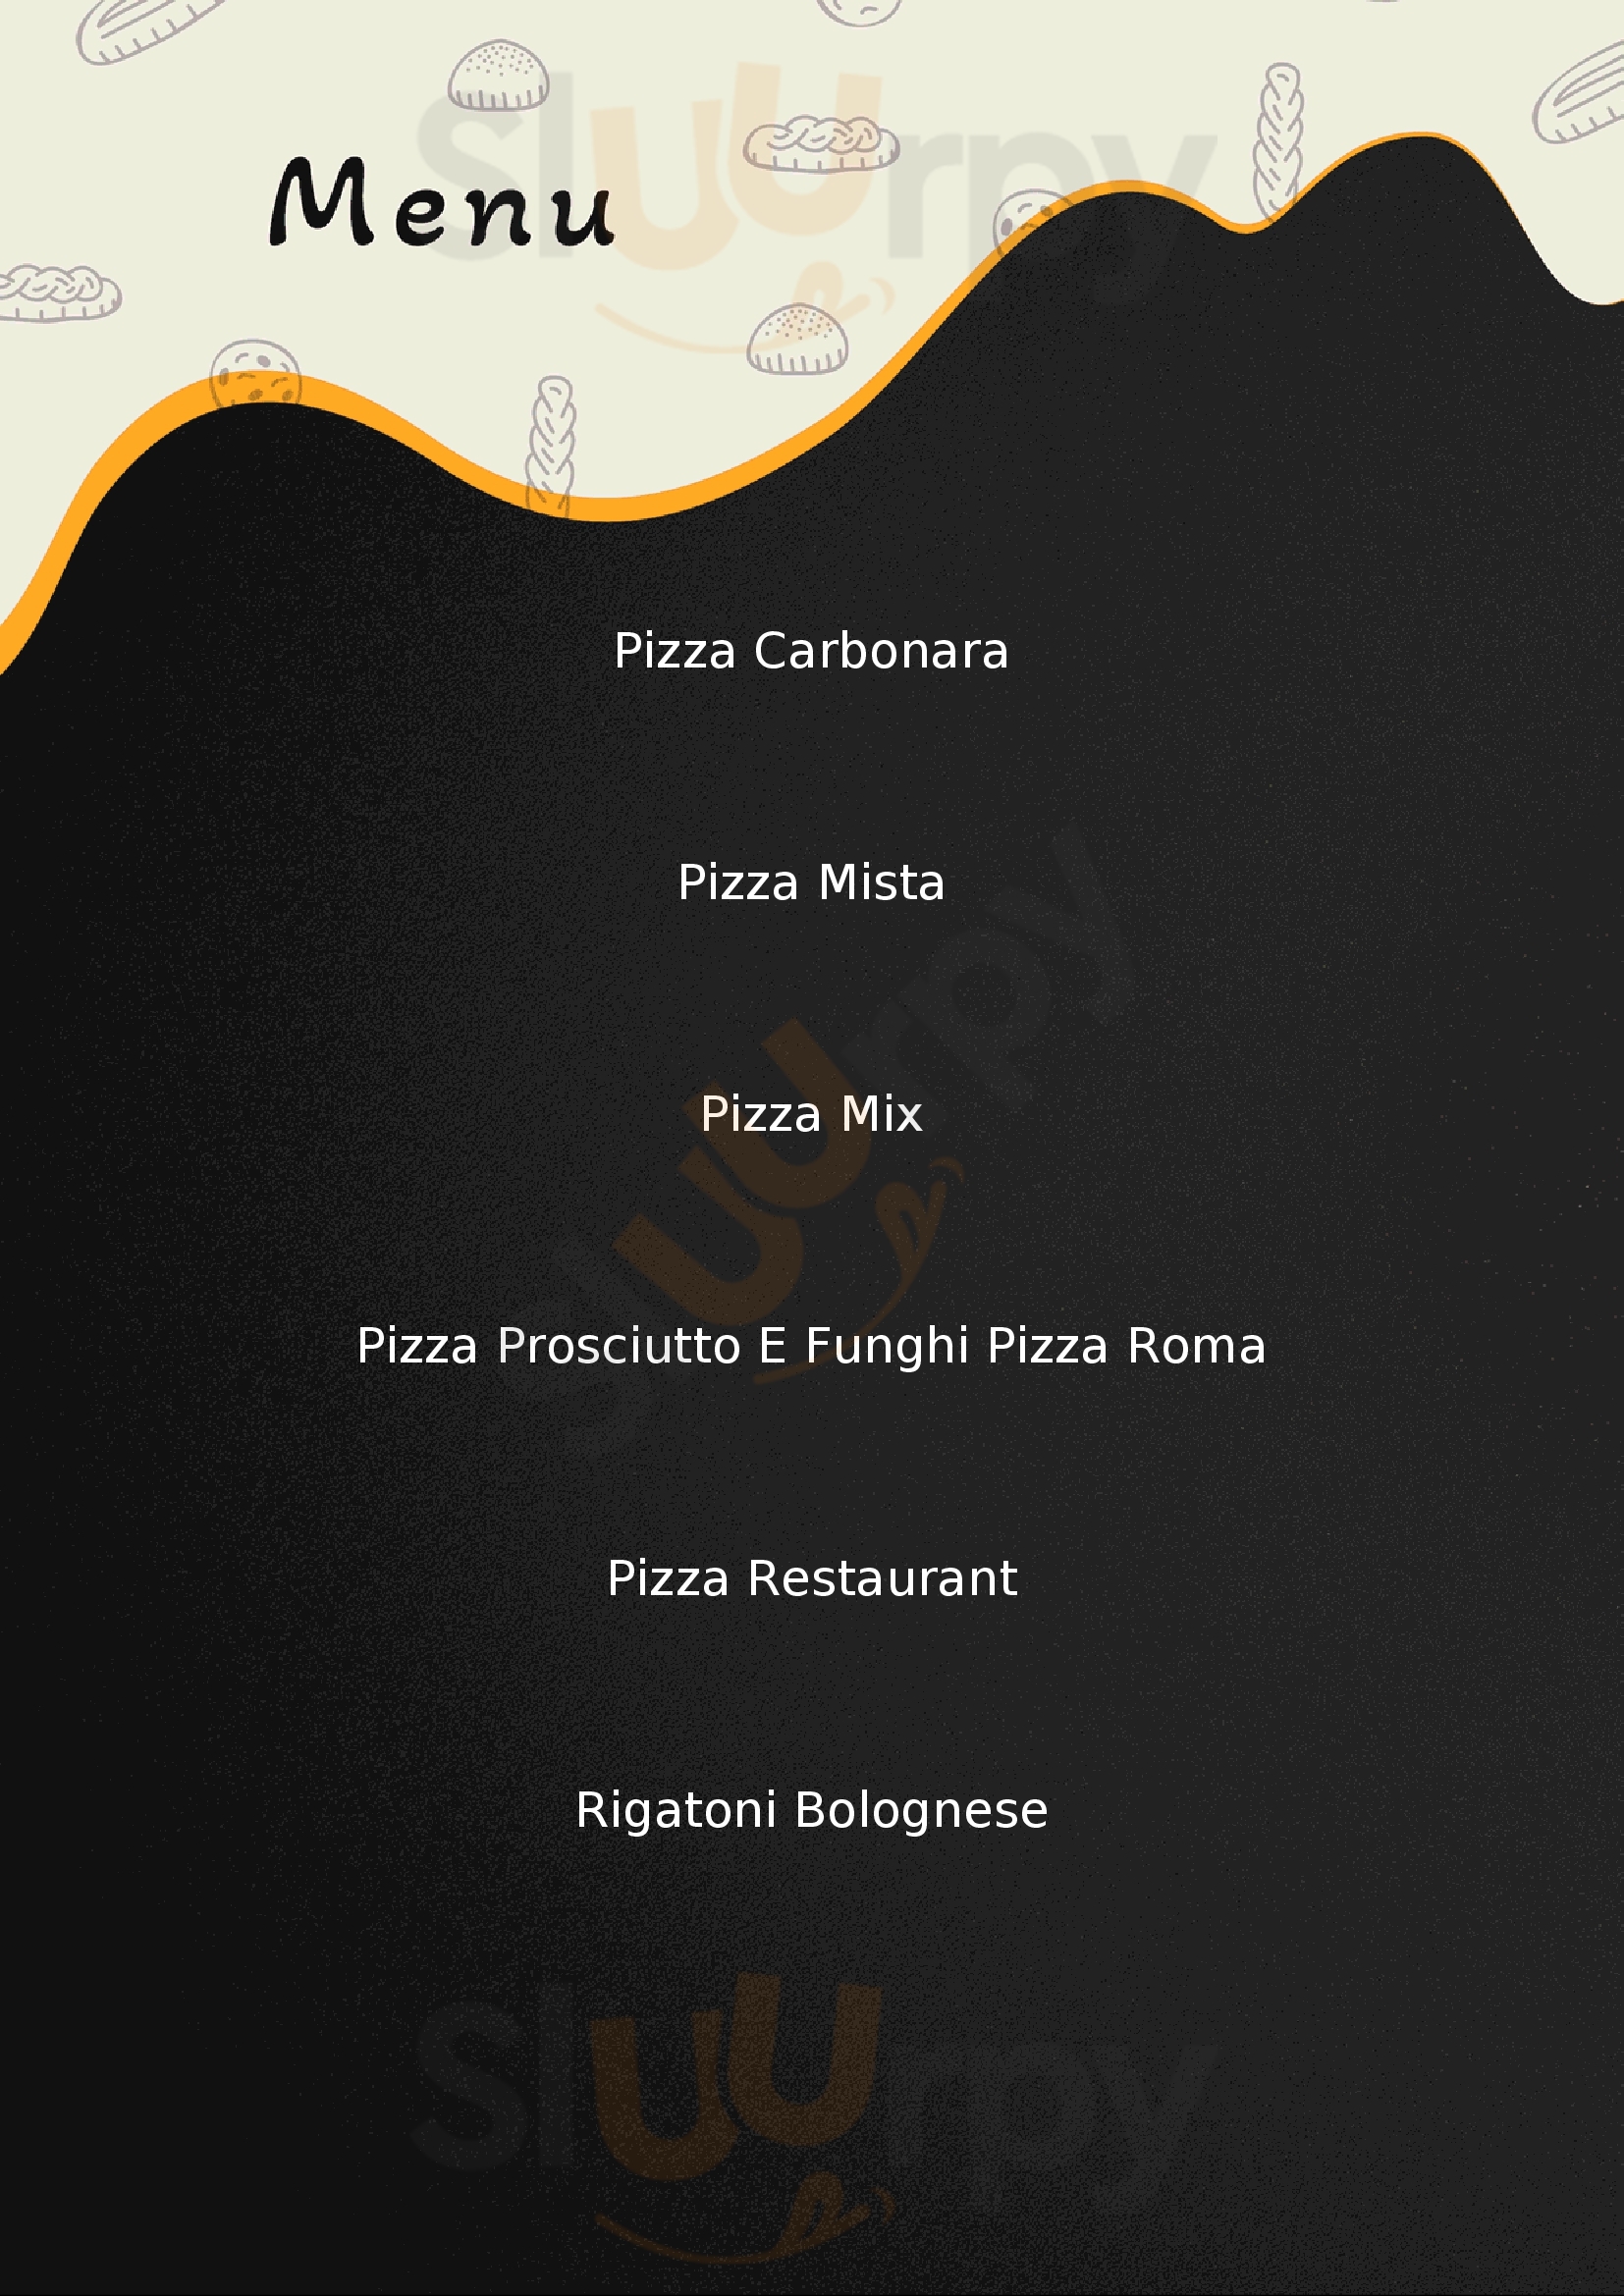 Bona Pizza Romana Roma menù 1 pagina